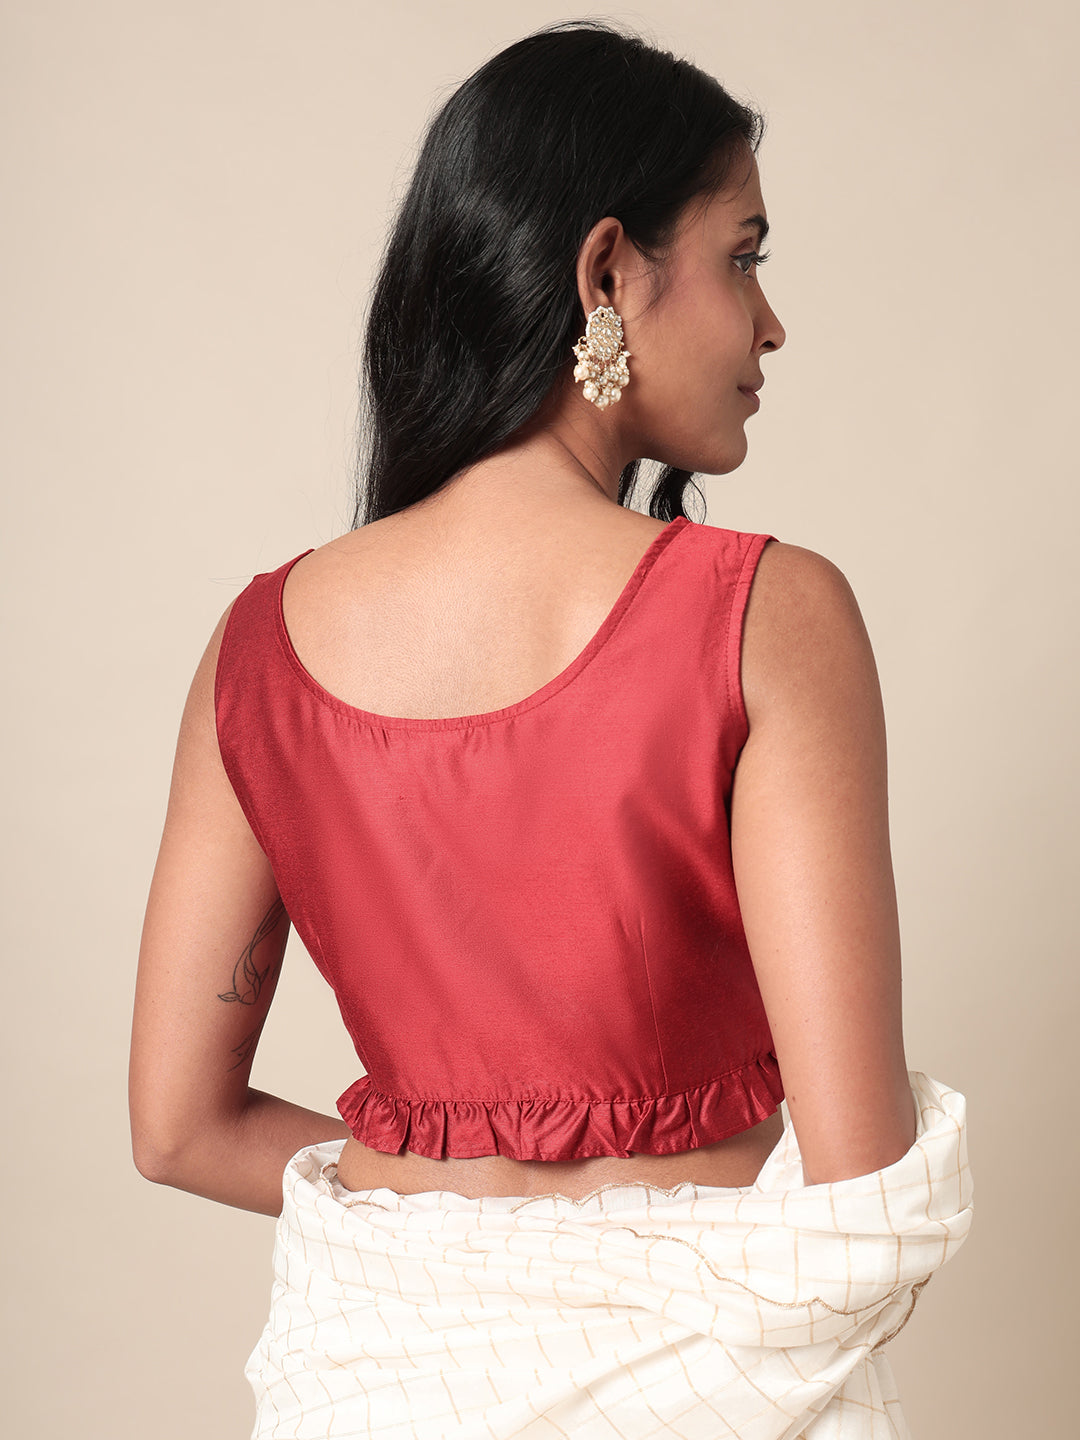 V neck blouse making in easy way 🥰//v shape trending blouse